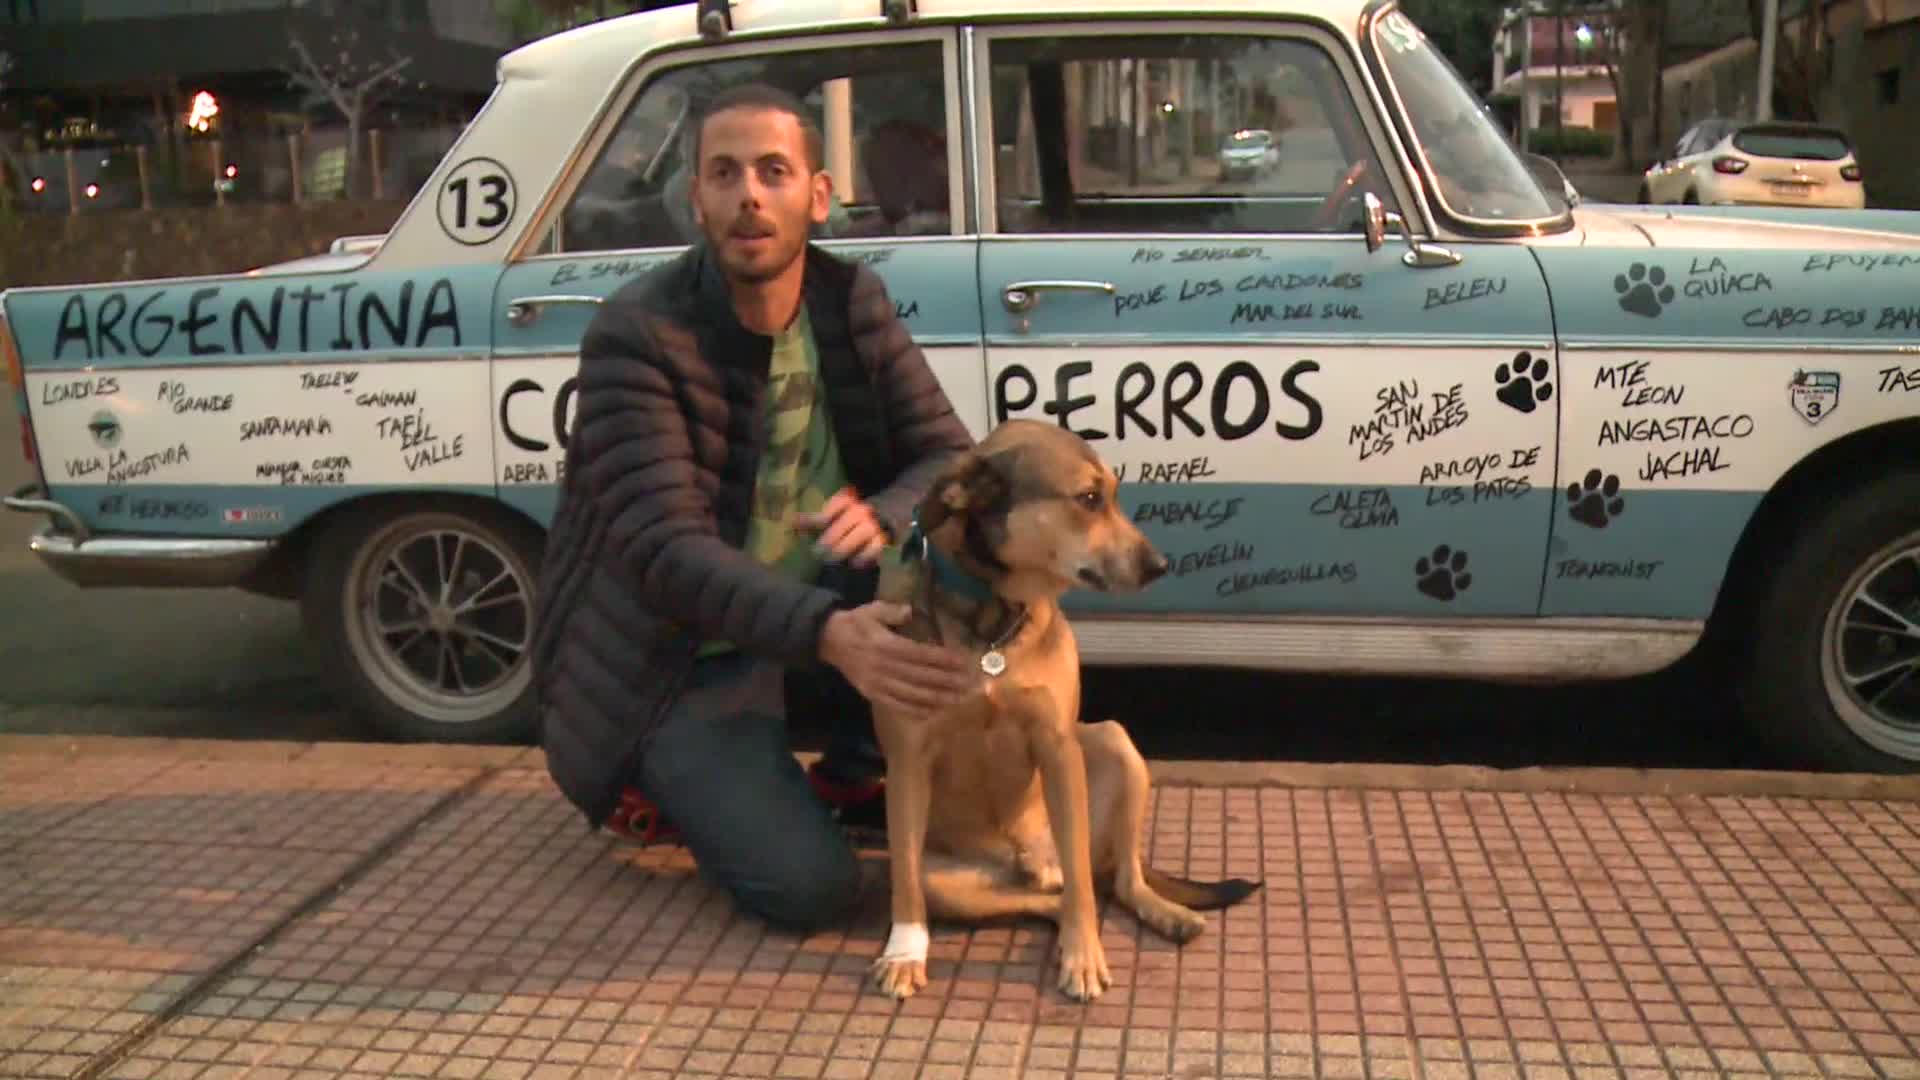 Lleva un mensaje de tenencia responsable: charly, el bonaerense que recorre el país con su perro 